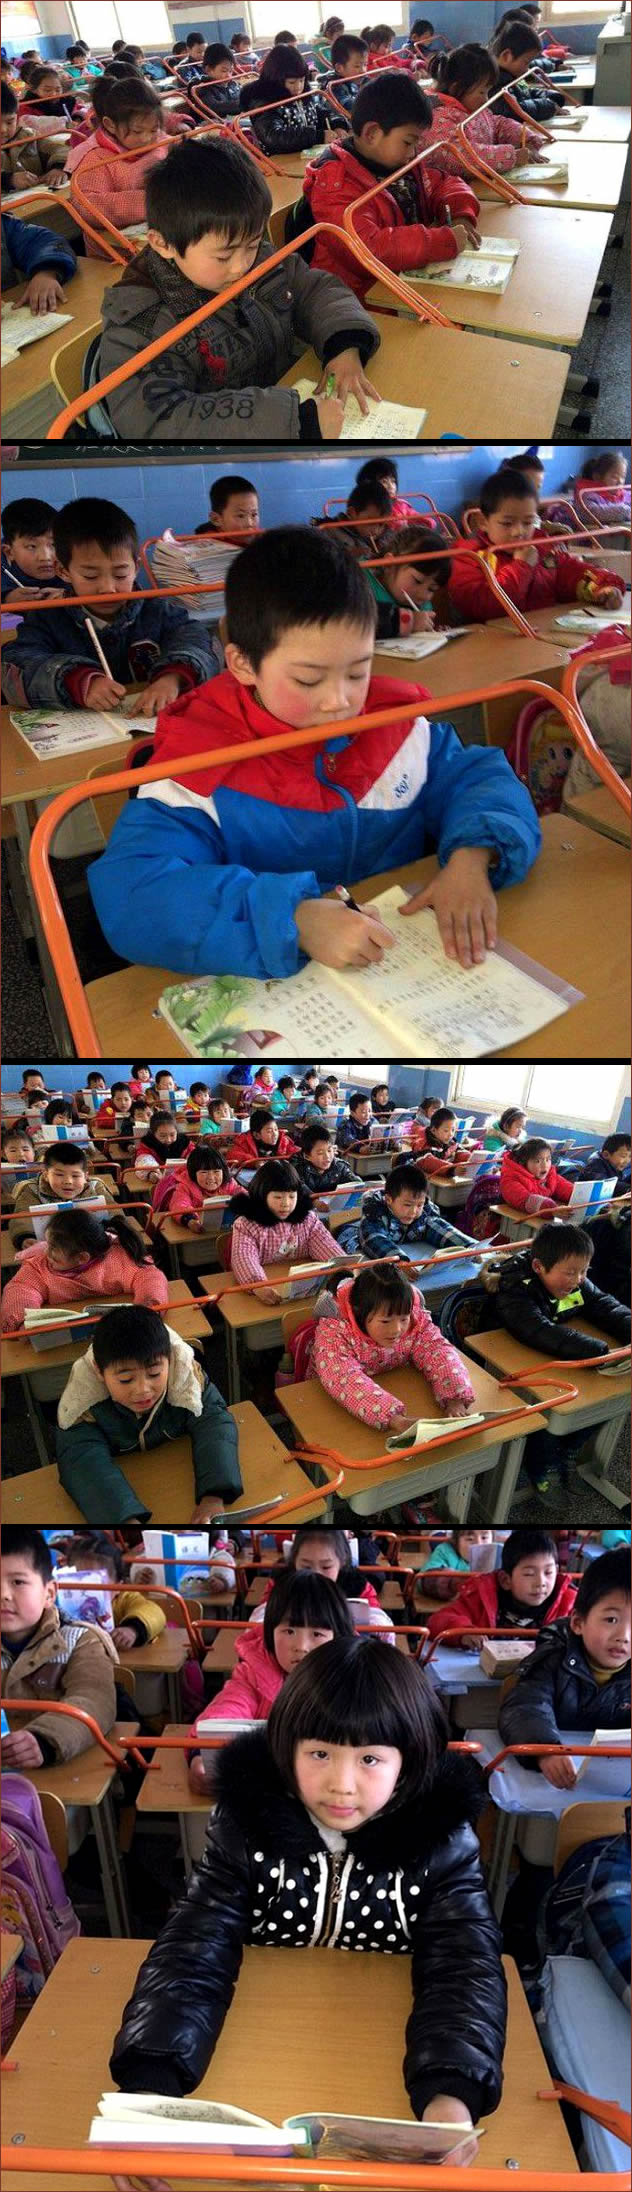 chinos-estudiando